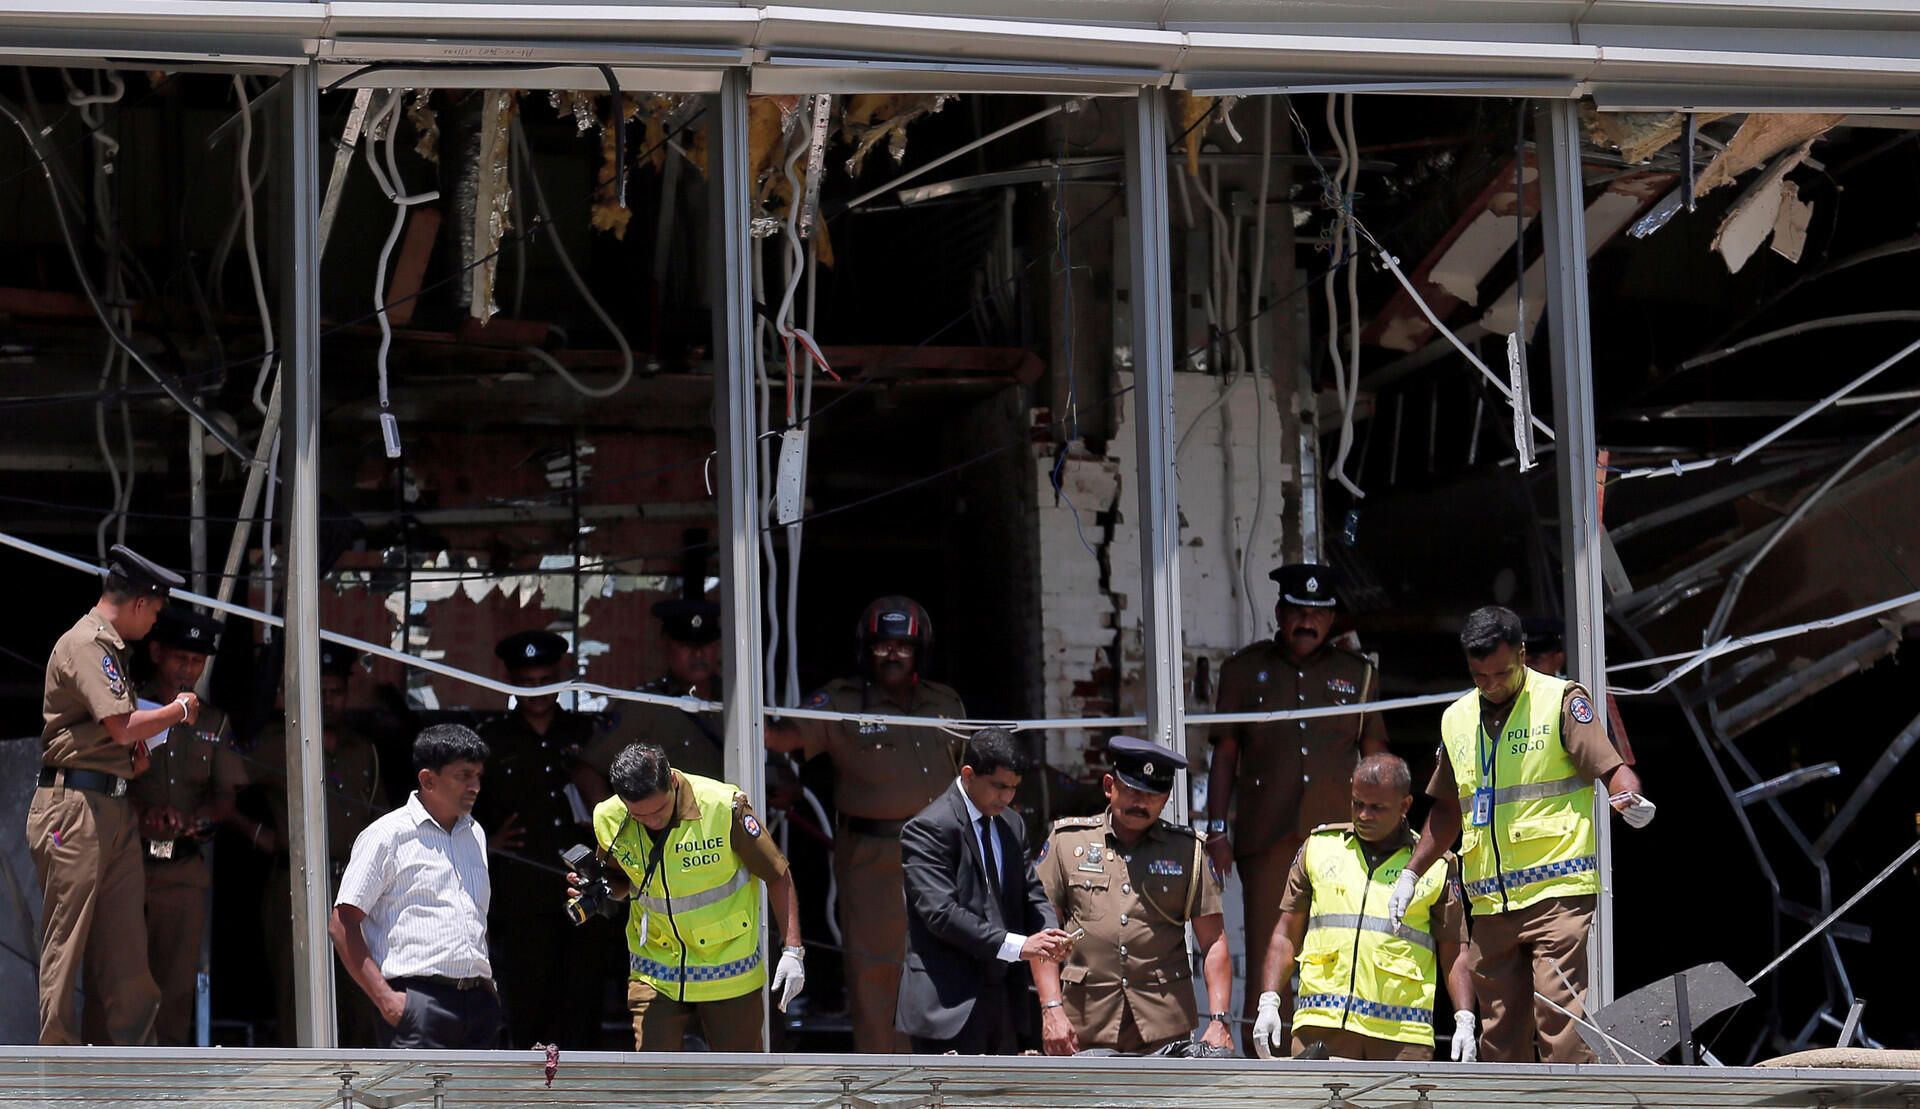 Серия взрывов произошла в храмах и пятизвёздочных отелях Шри-Ланки 21 апреля, в католическую Пасху. Фото: russian.rt.com